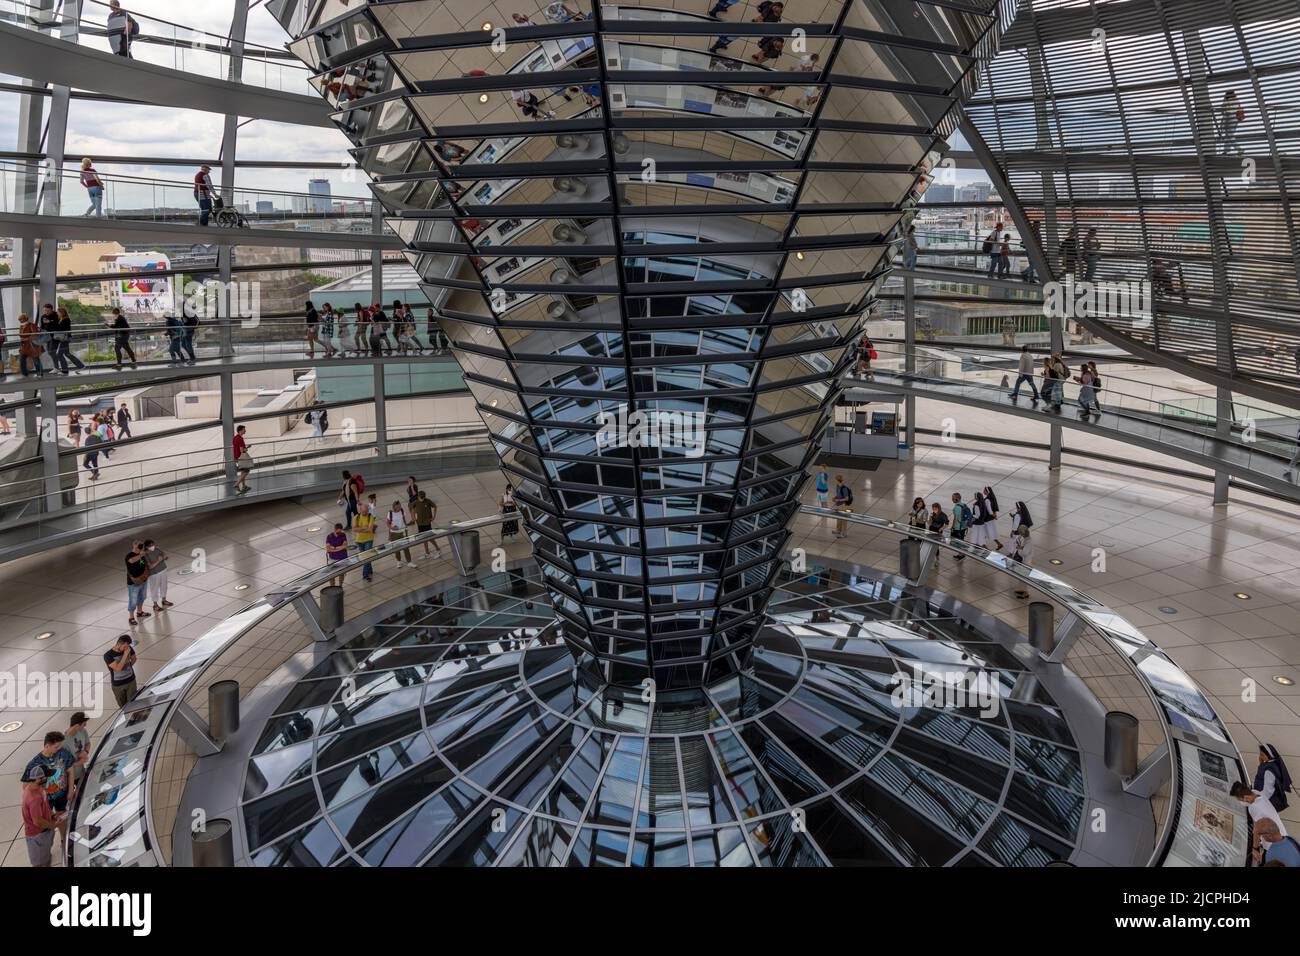 Reichstag, Parlement du Bundestag, intérieur du dôme en verre, architecte Sir Norman Foster, Berlin, Allemagne. Banque D'Images